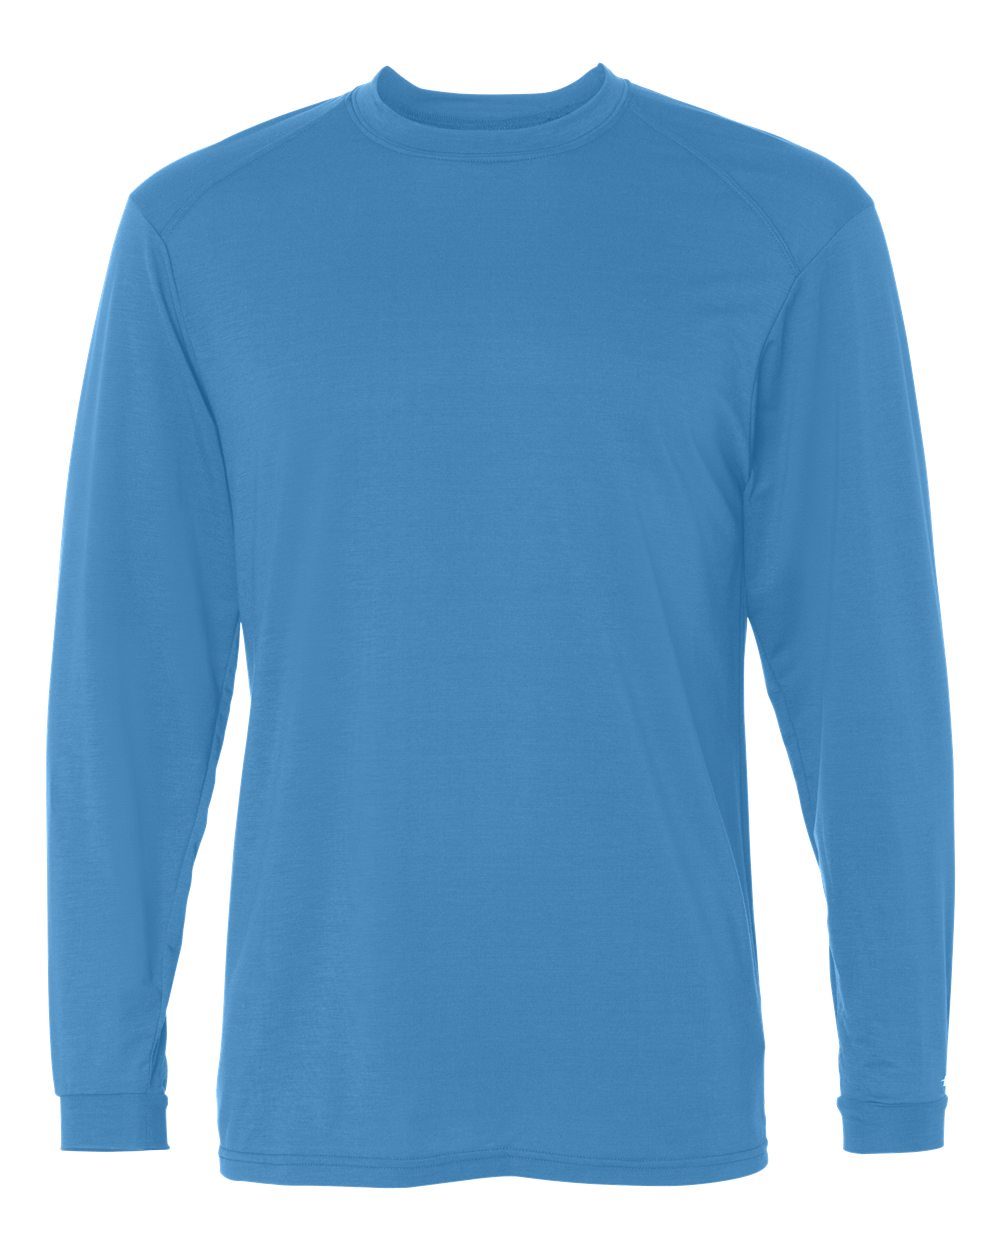 Badger 4804 - B-Tech Cotton-Feel Long Sleeve T-Shirt